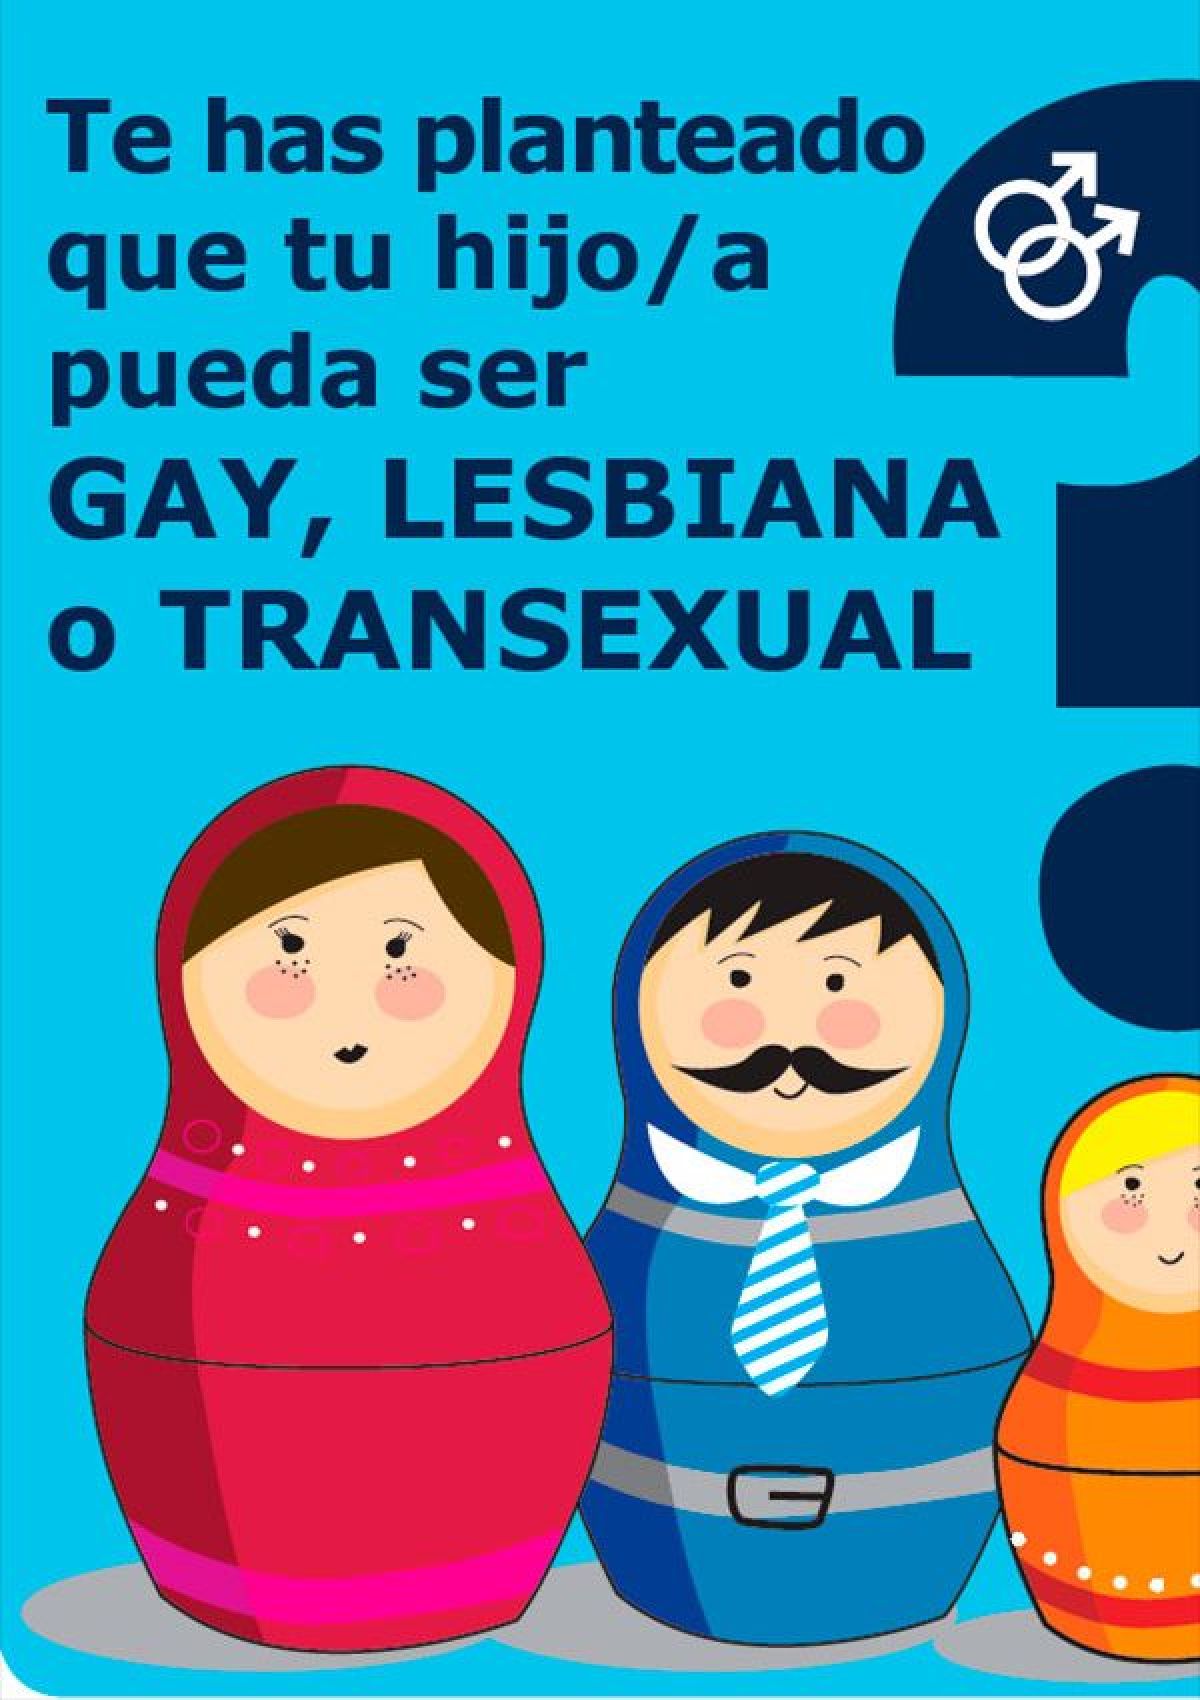 07. ¿Te has planteado que tu hijo/a pueda ser GAY, LESBIANA o TRANSEXUAL?